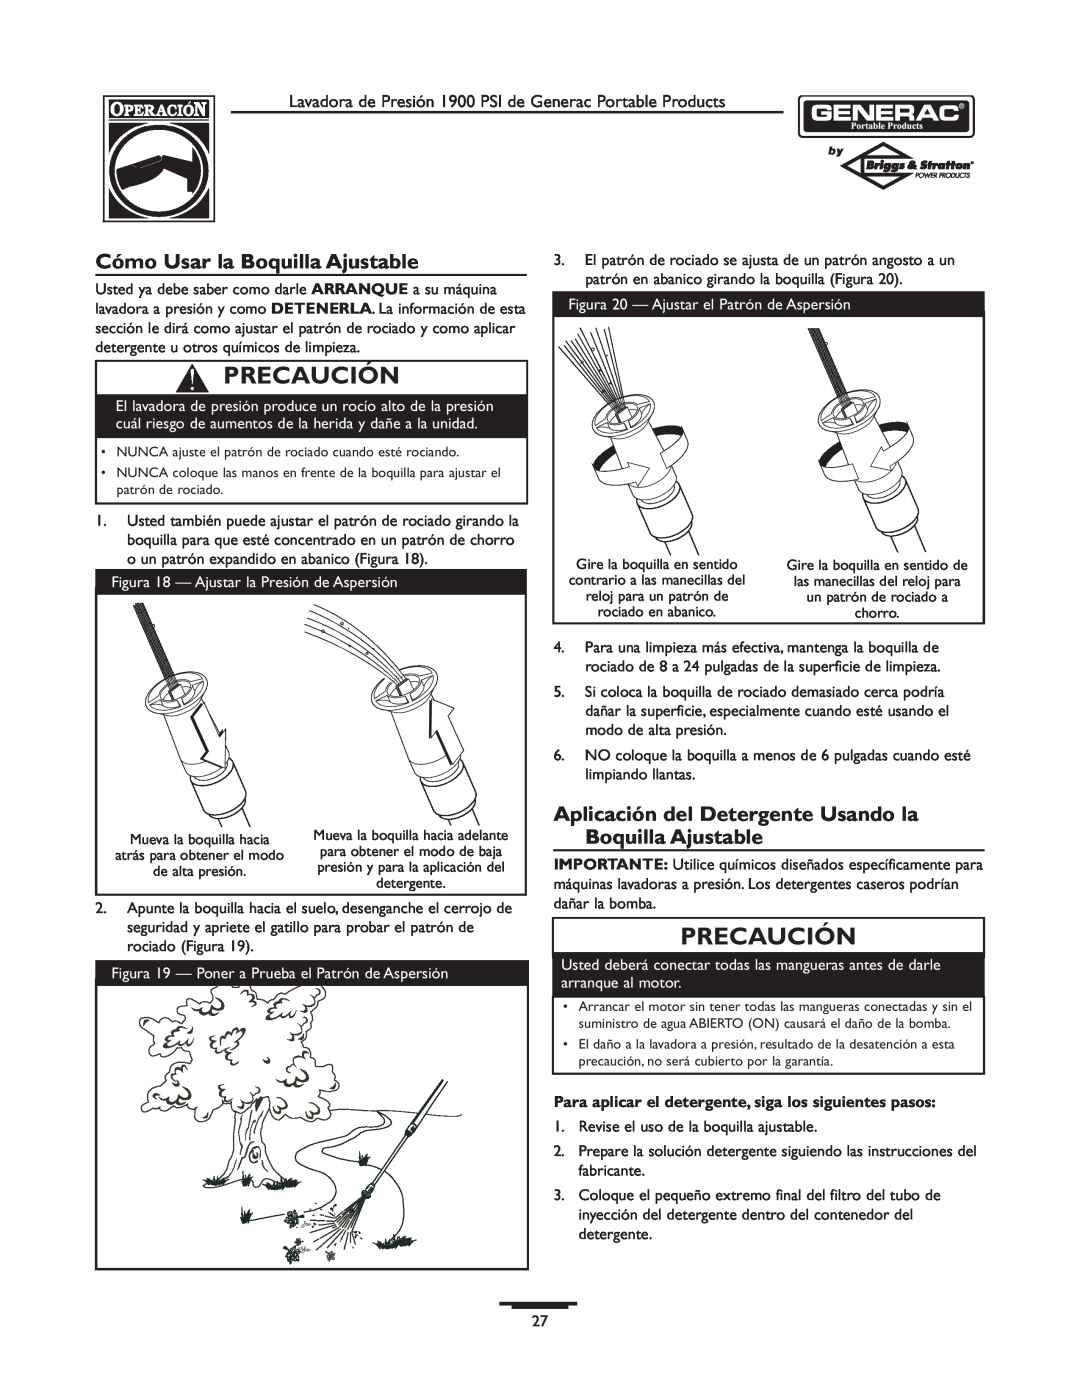 Briggs & Stratton 1900PSI owner manual Cómo Usar la Boquilla Ajustable, Precaución 